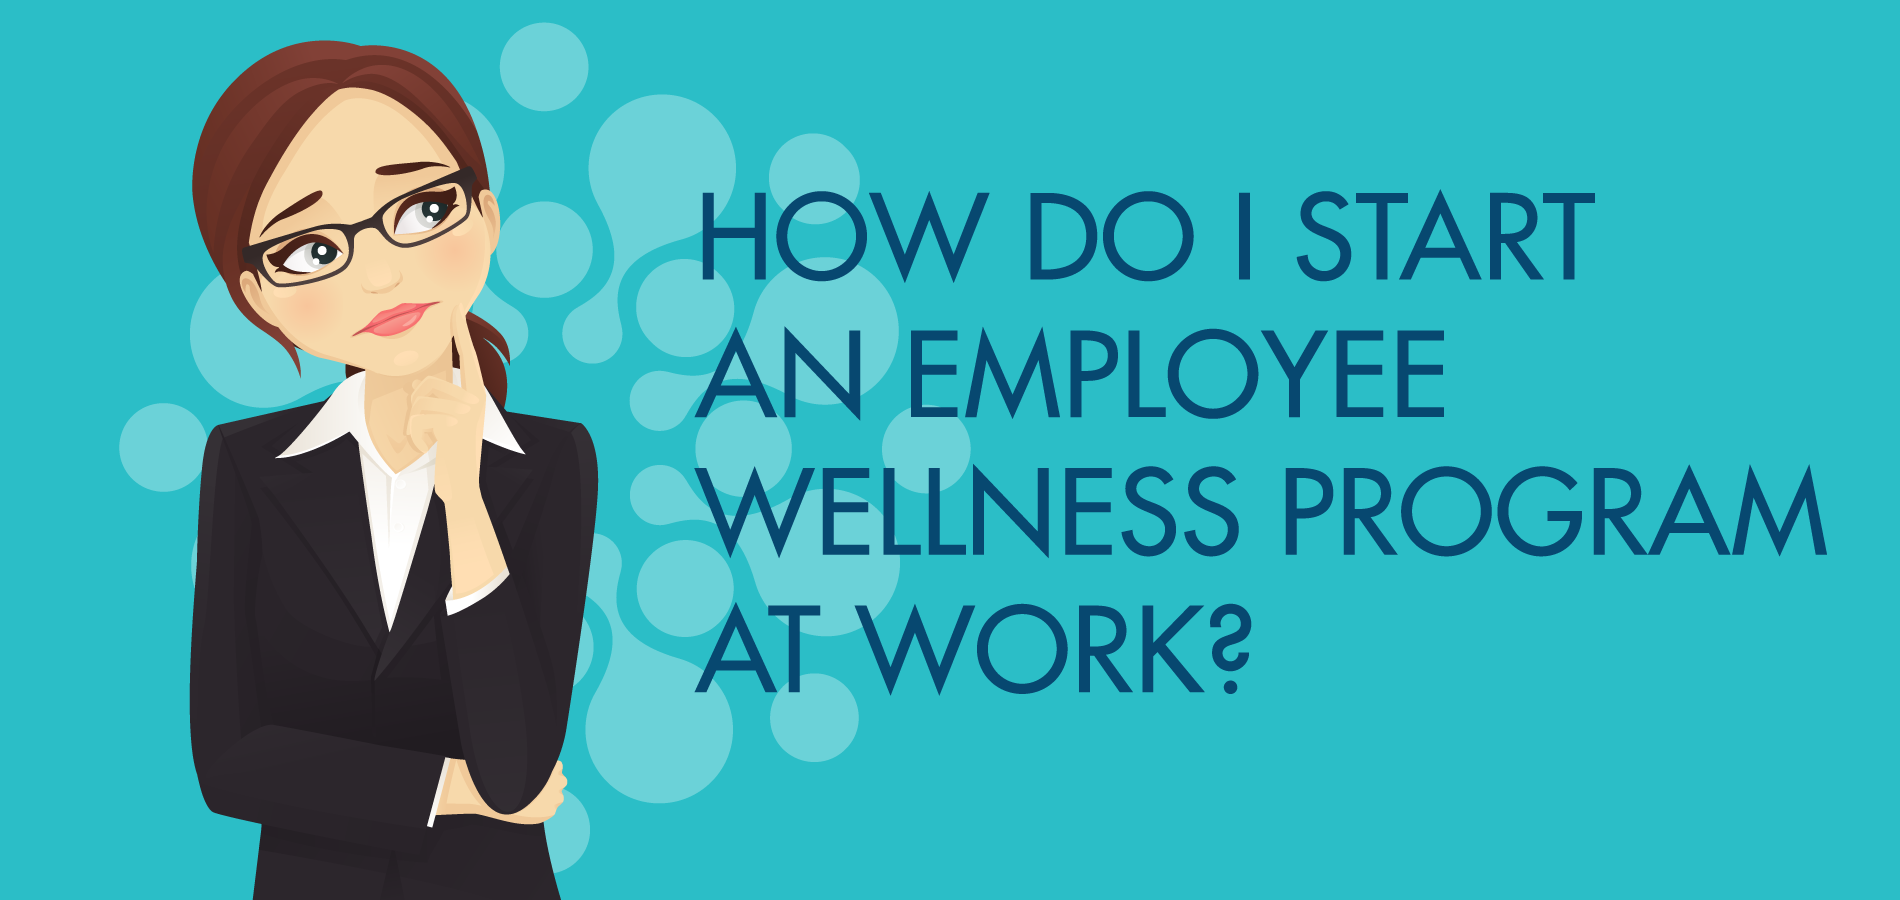 How do I start an employee wellness program at work